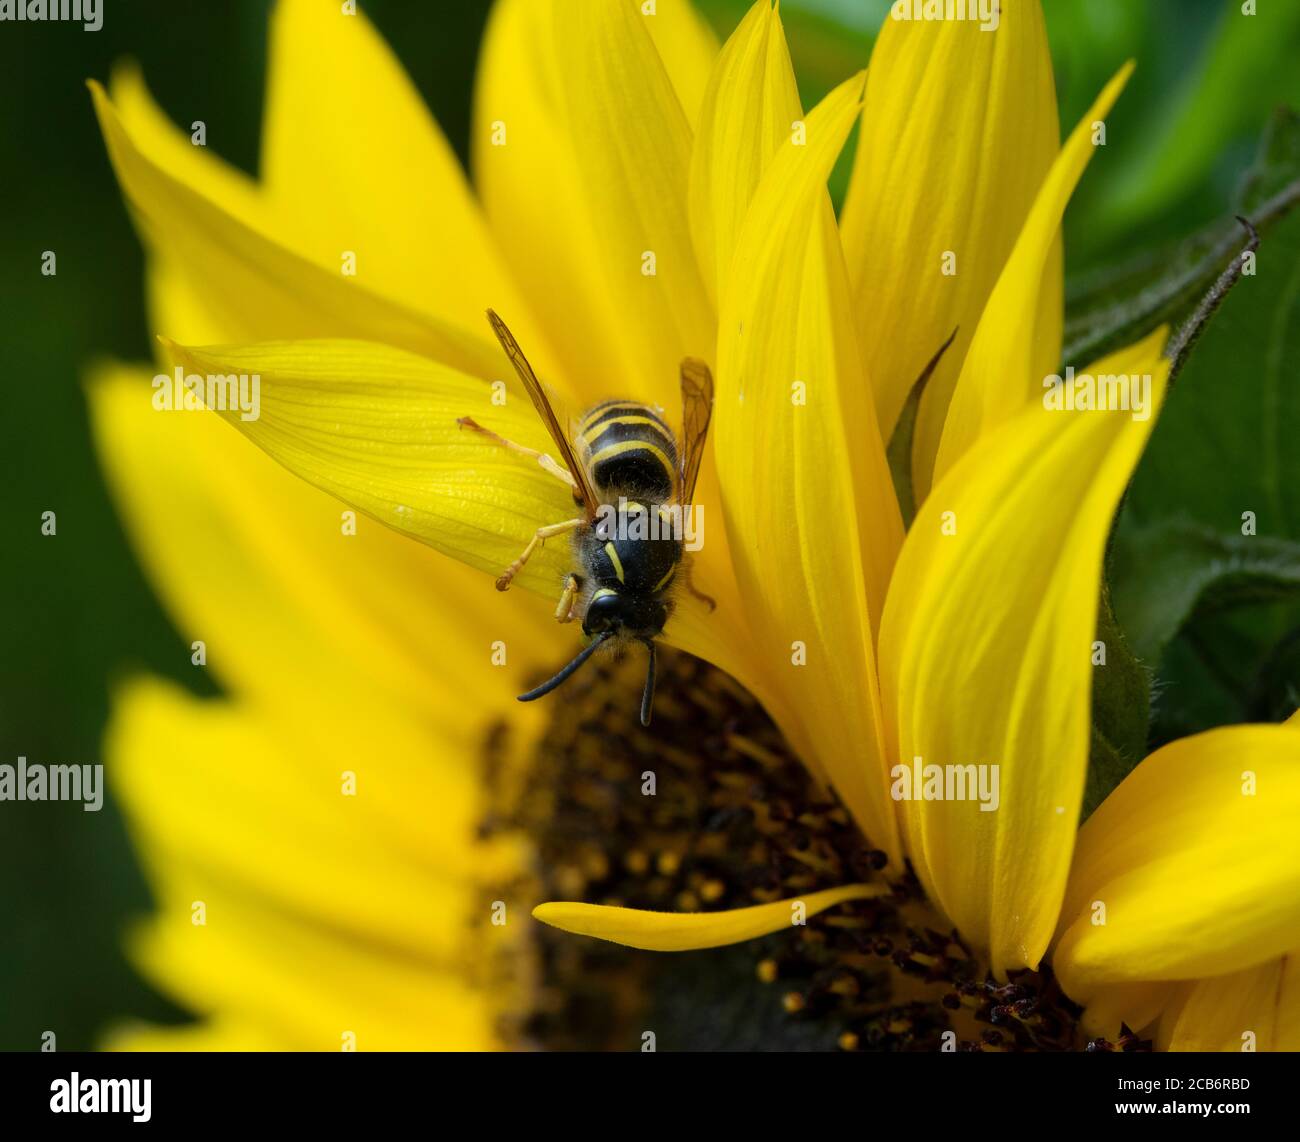 Tree wasp asleep on sunflower Stock Photo